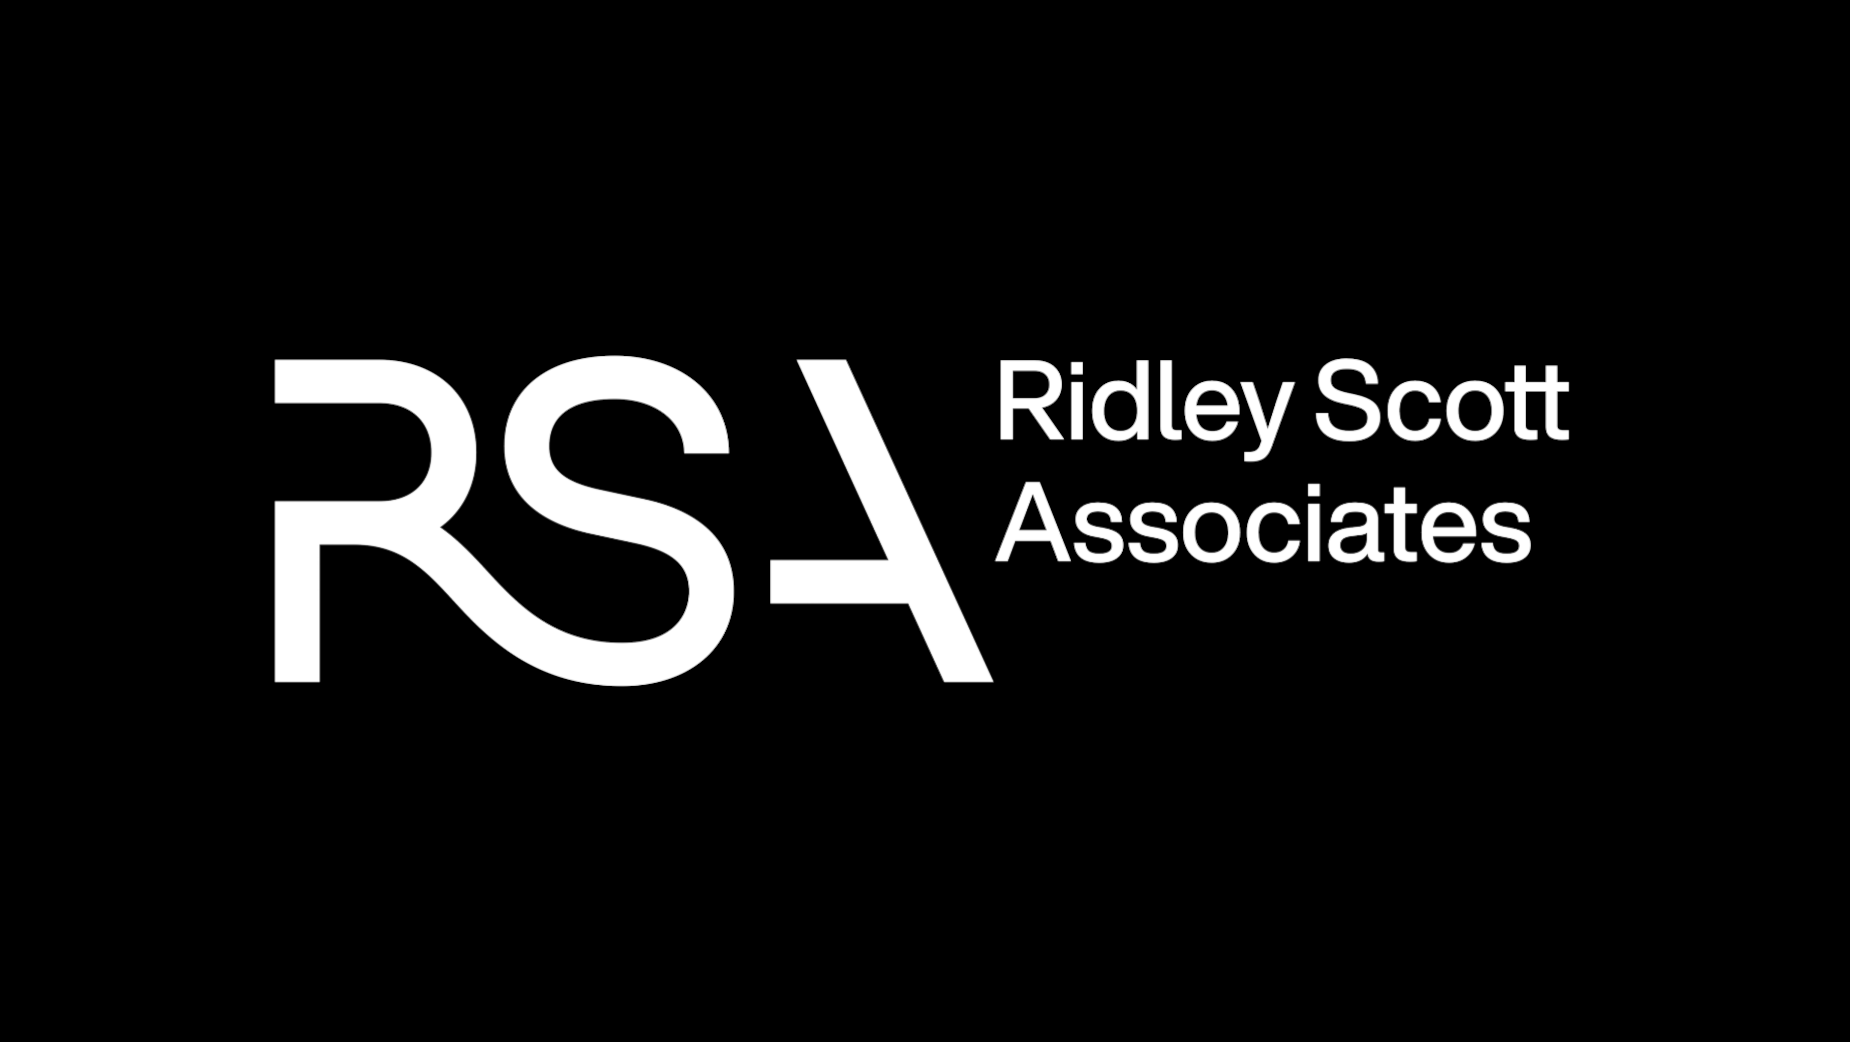 Ridley Scott Associates Launch Rebrand [Video]